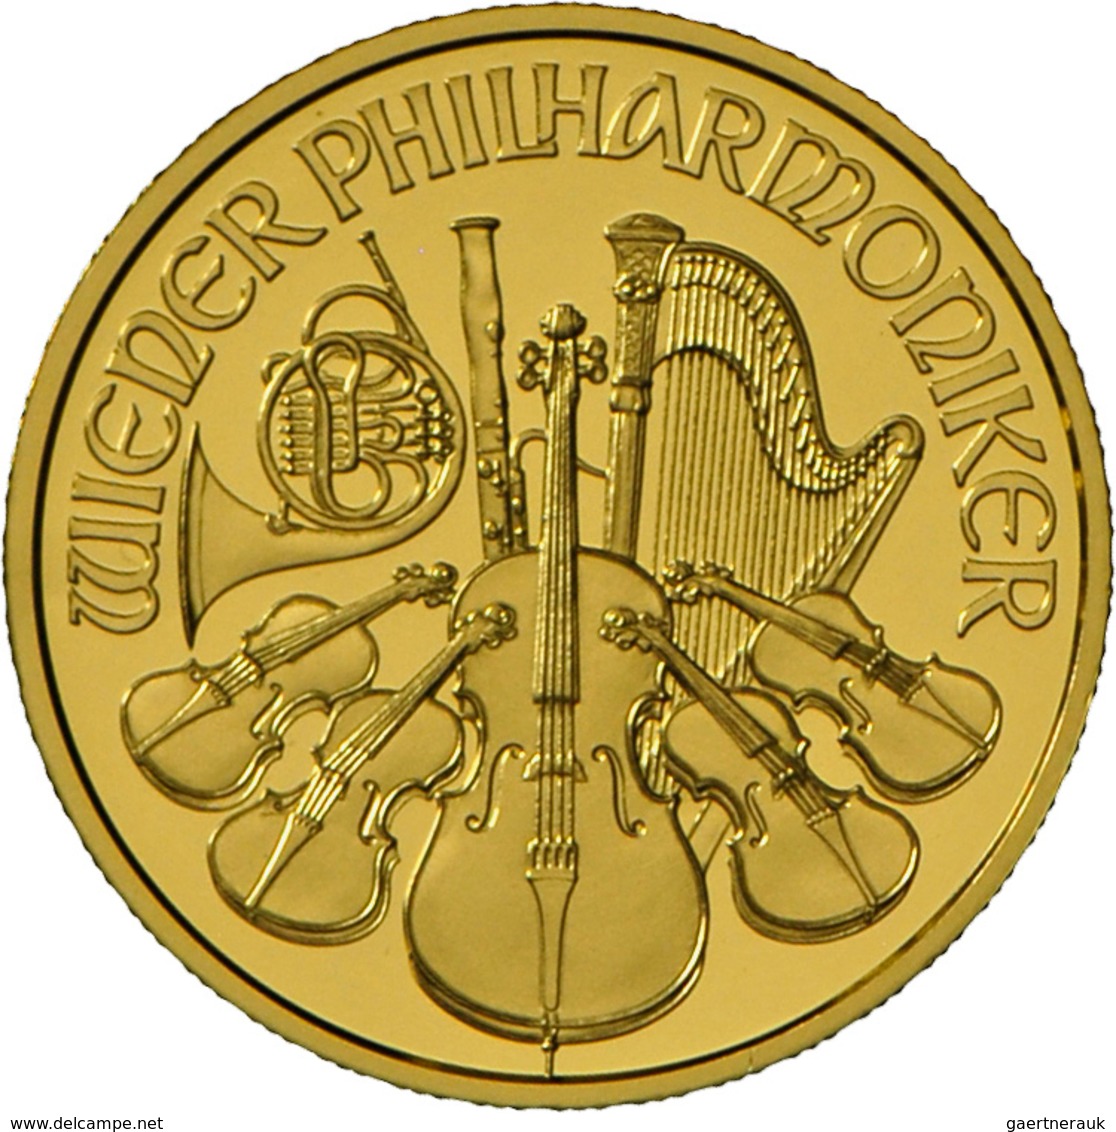 Österreich - Anlagegold: Goldsatz Zu 25 Euro Und 100 Euro 2014: 25 Jahre Wiener Philharmoniker: Limi - Austria